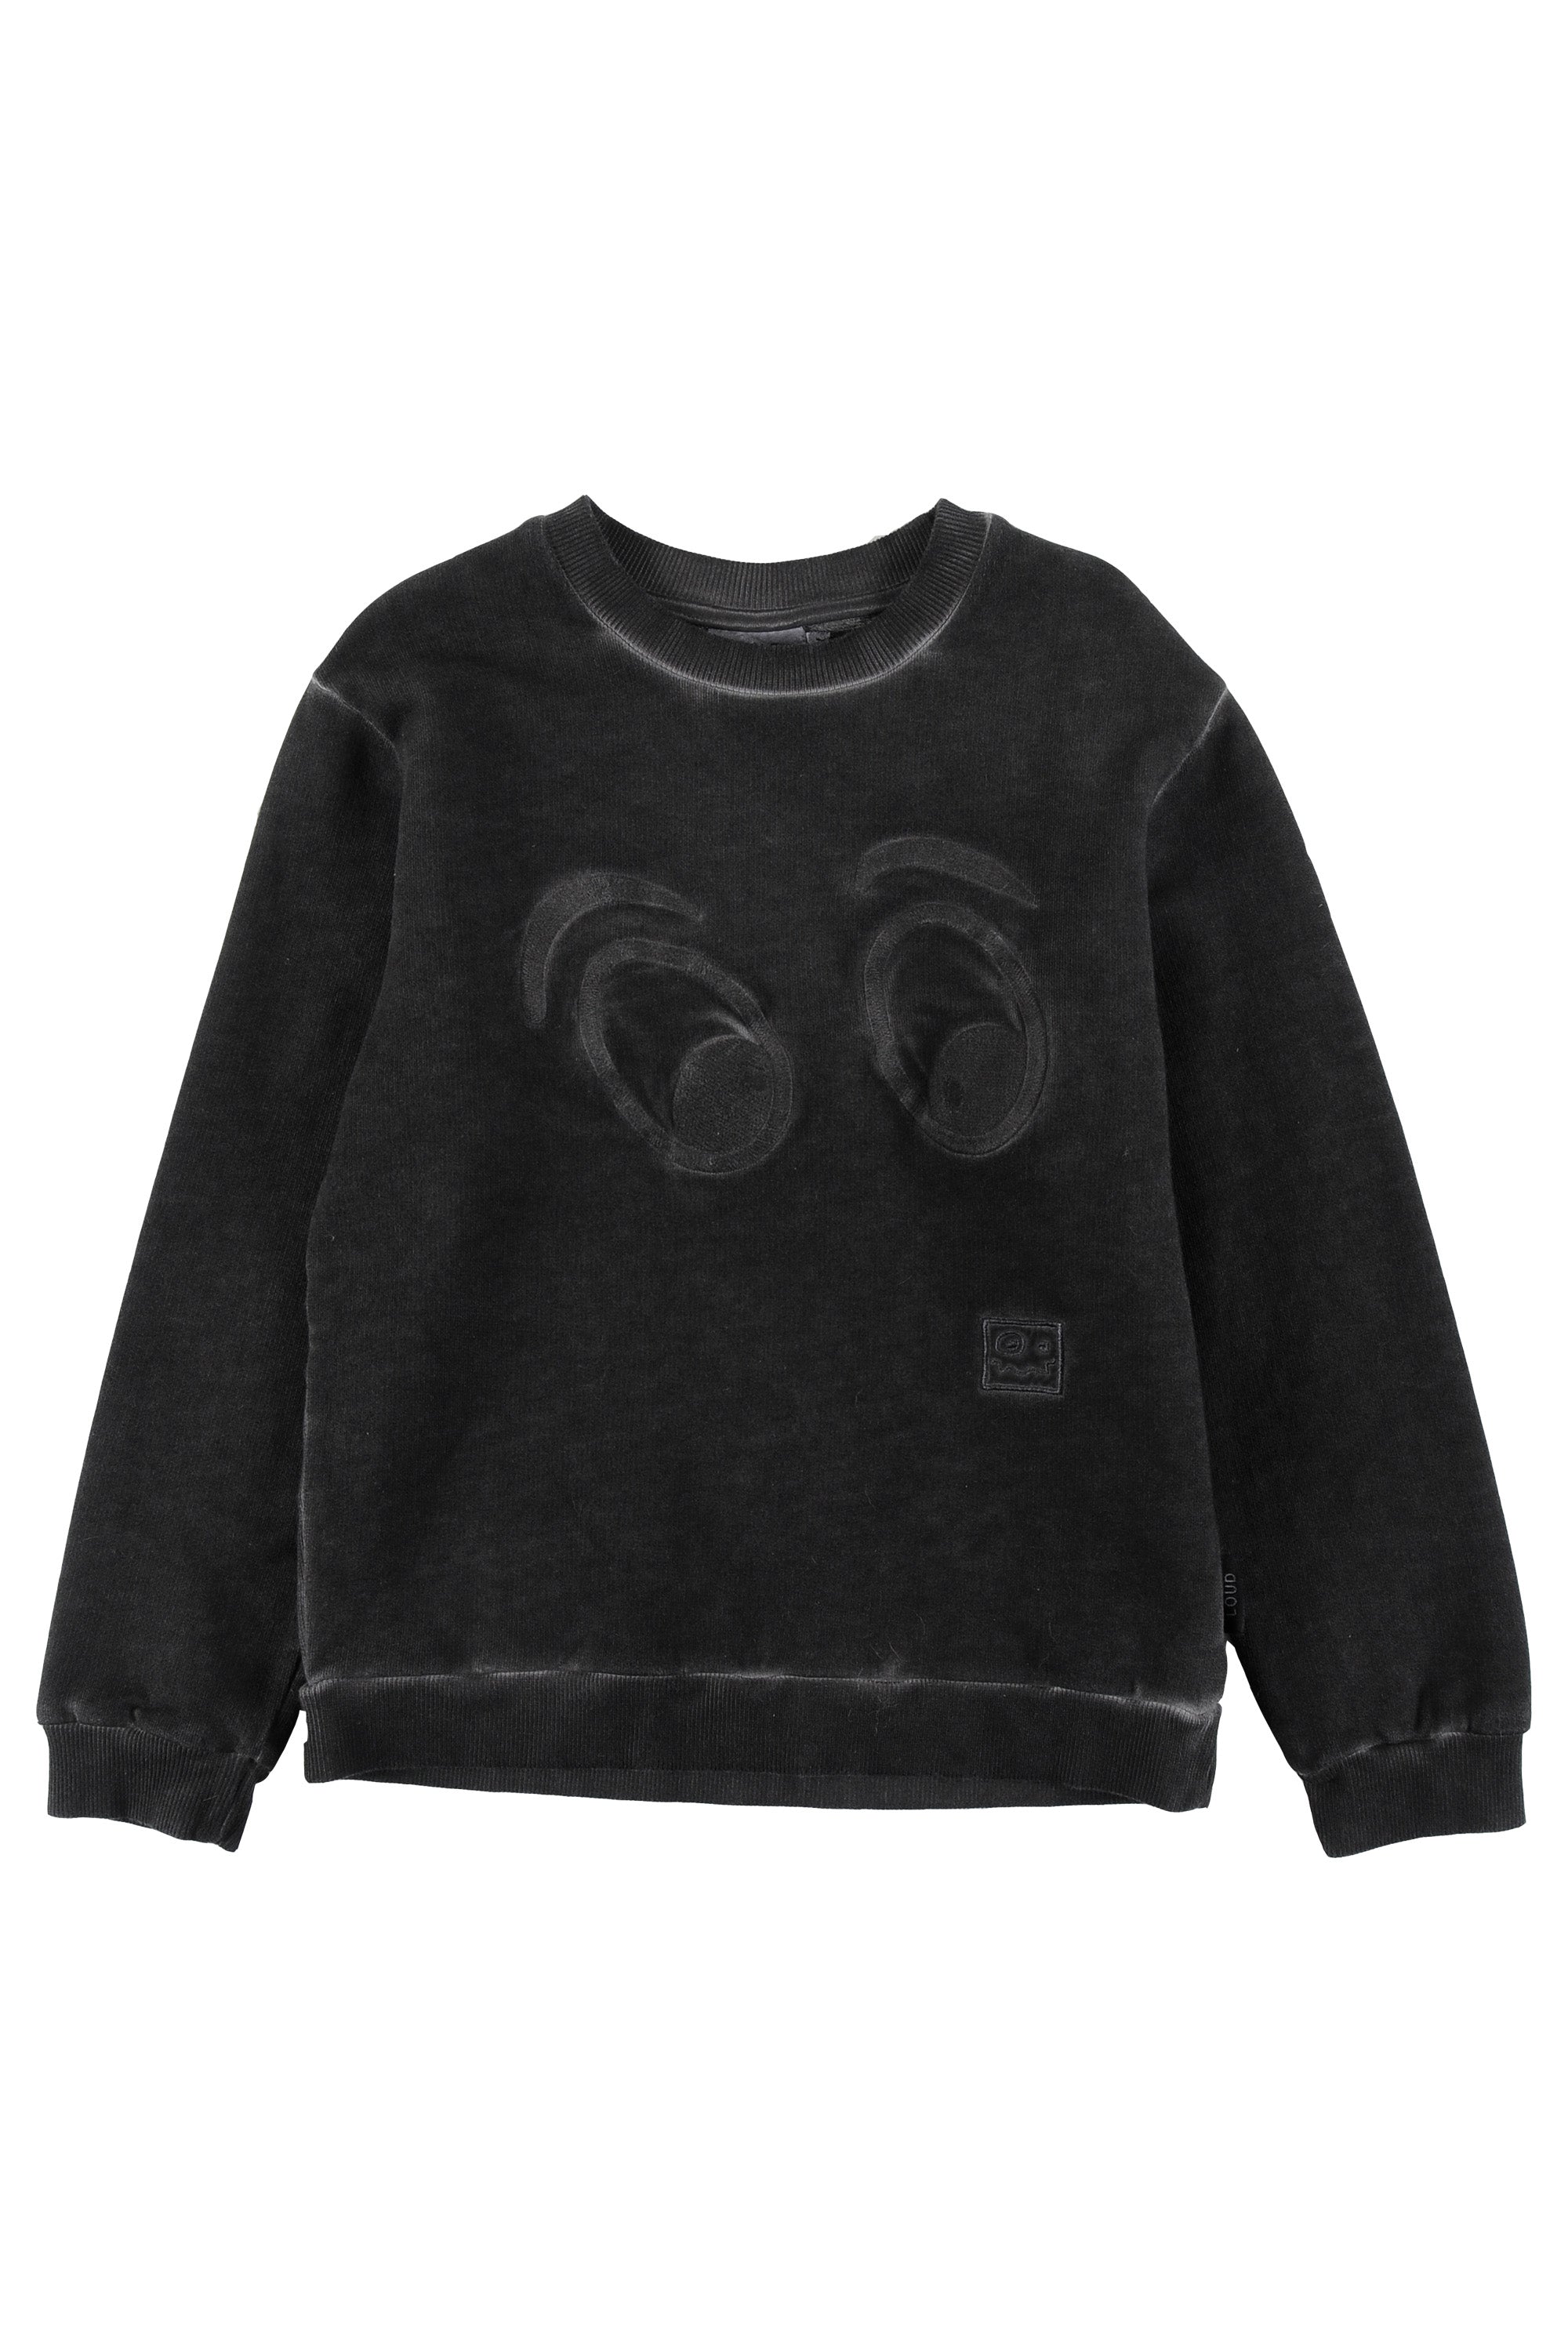 Loud Apparel Life Cub Sweater and Black Panda –